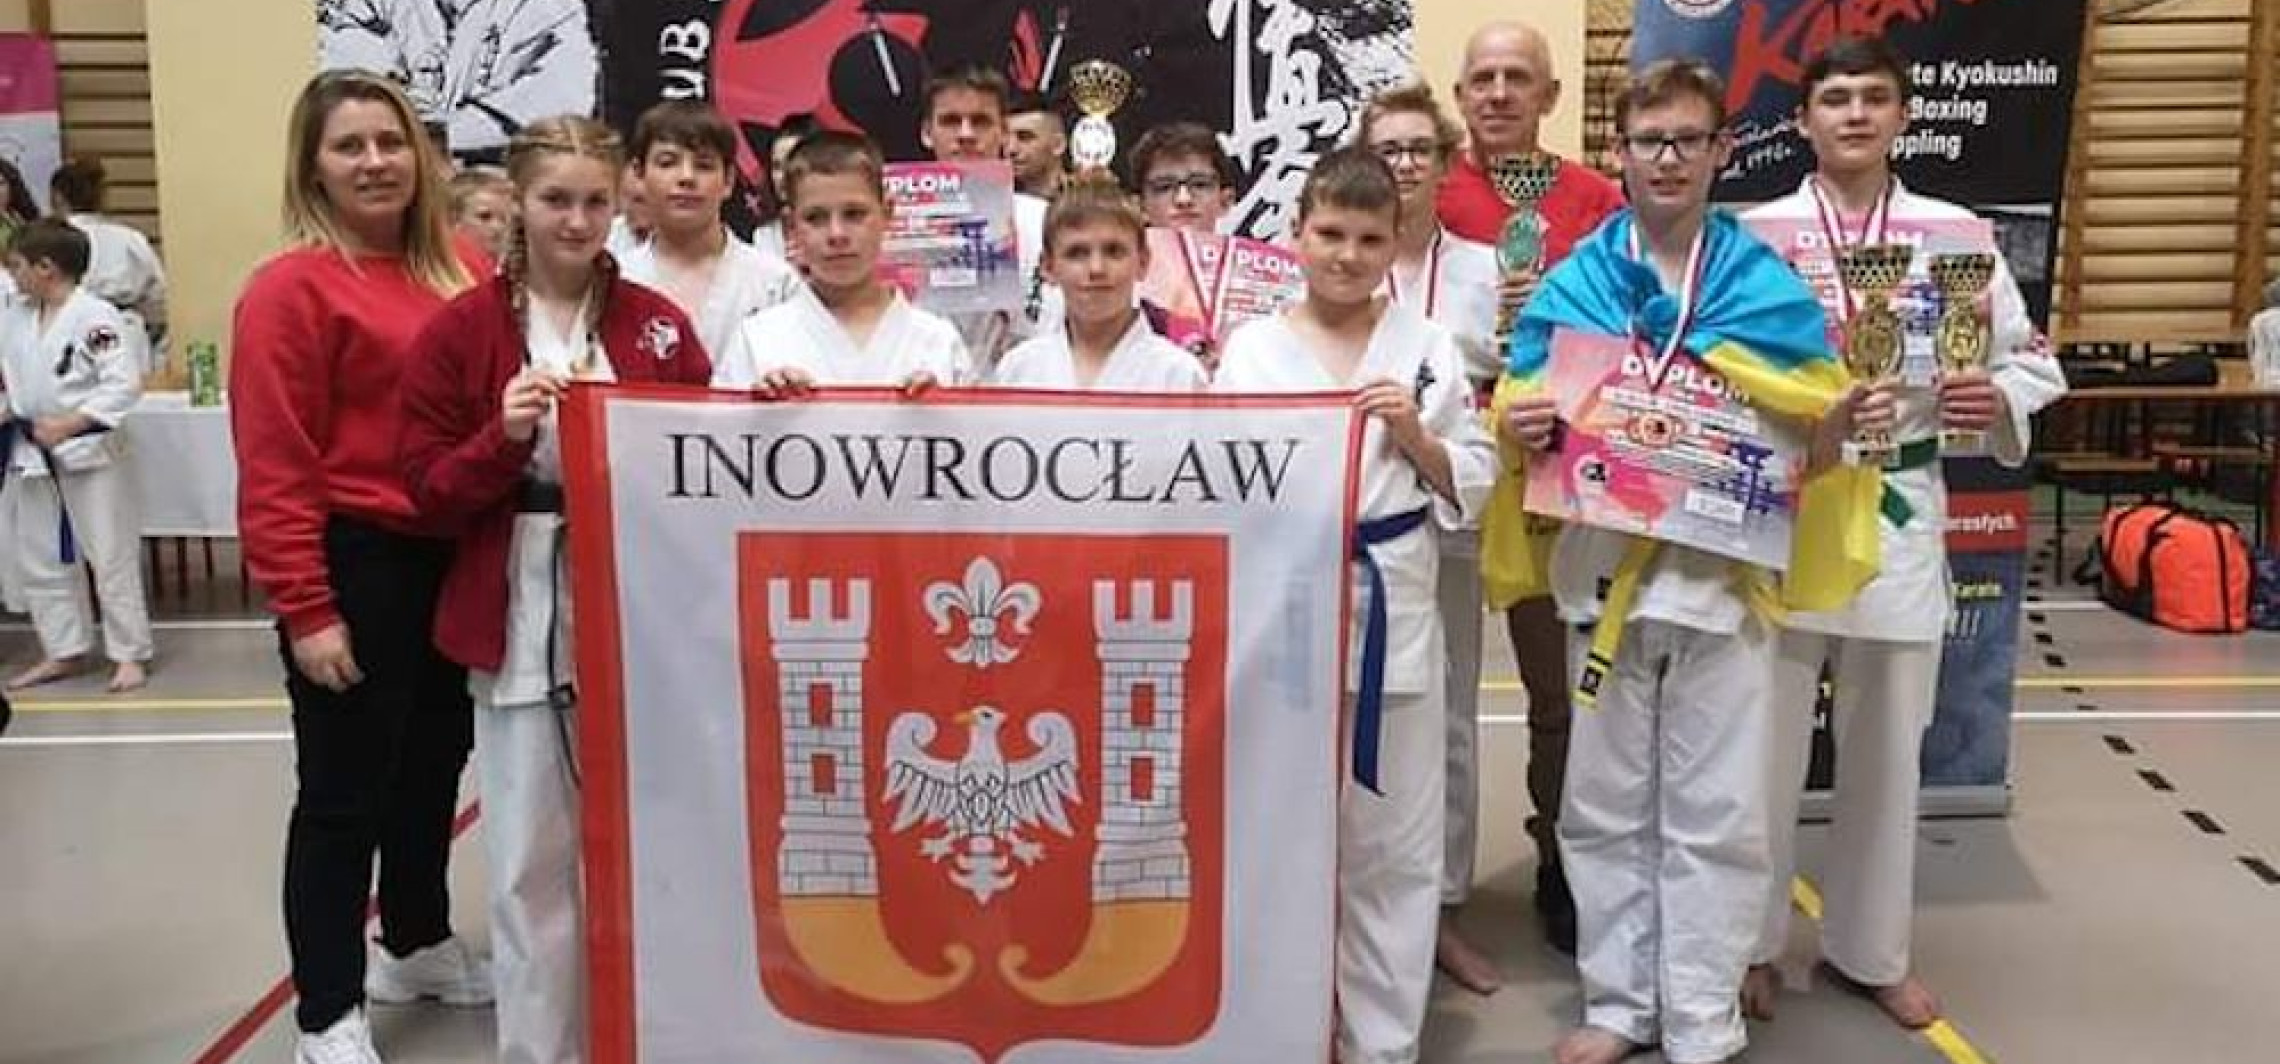 Inowrocław - Sukcesy karateków z Inowrocławia. Przywieźli 8 medali